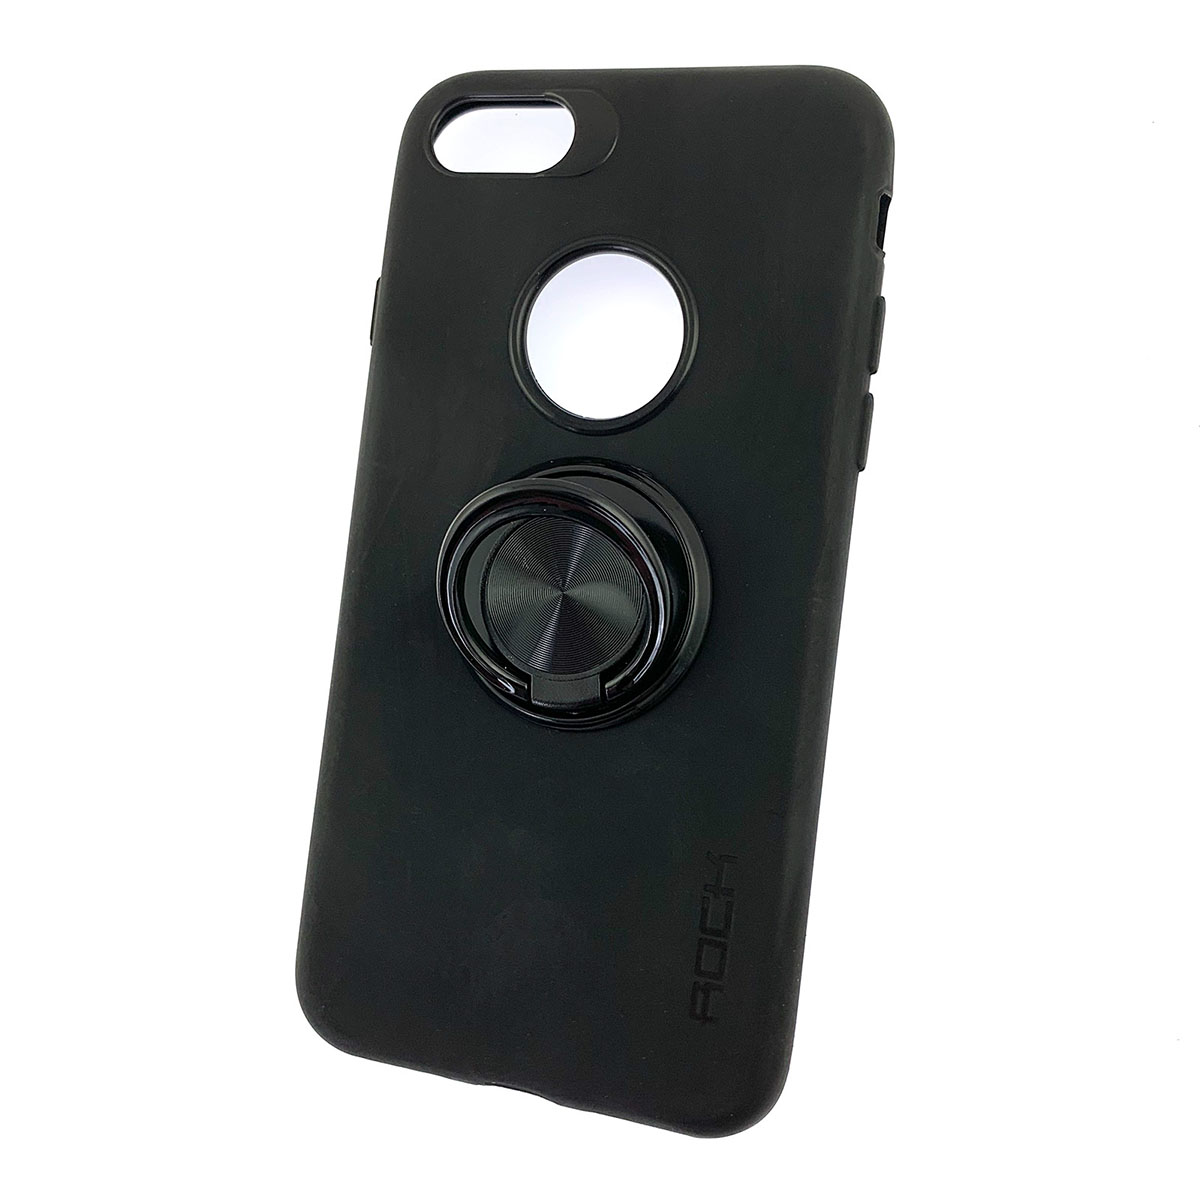 Чехол накладка для APPLE iPhone 7, 8, силикон, кольцо держатель, цвет черный.